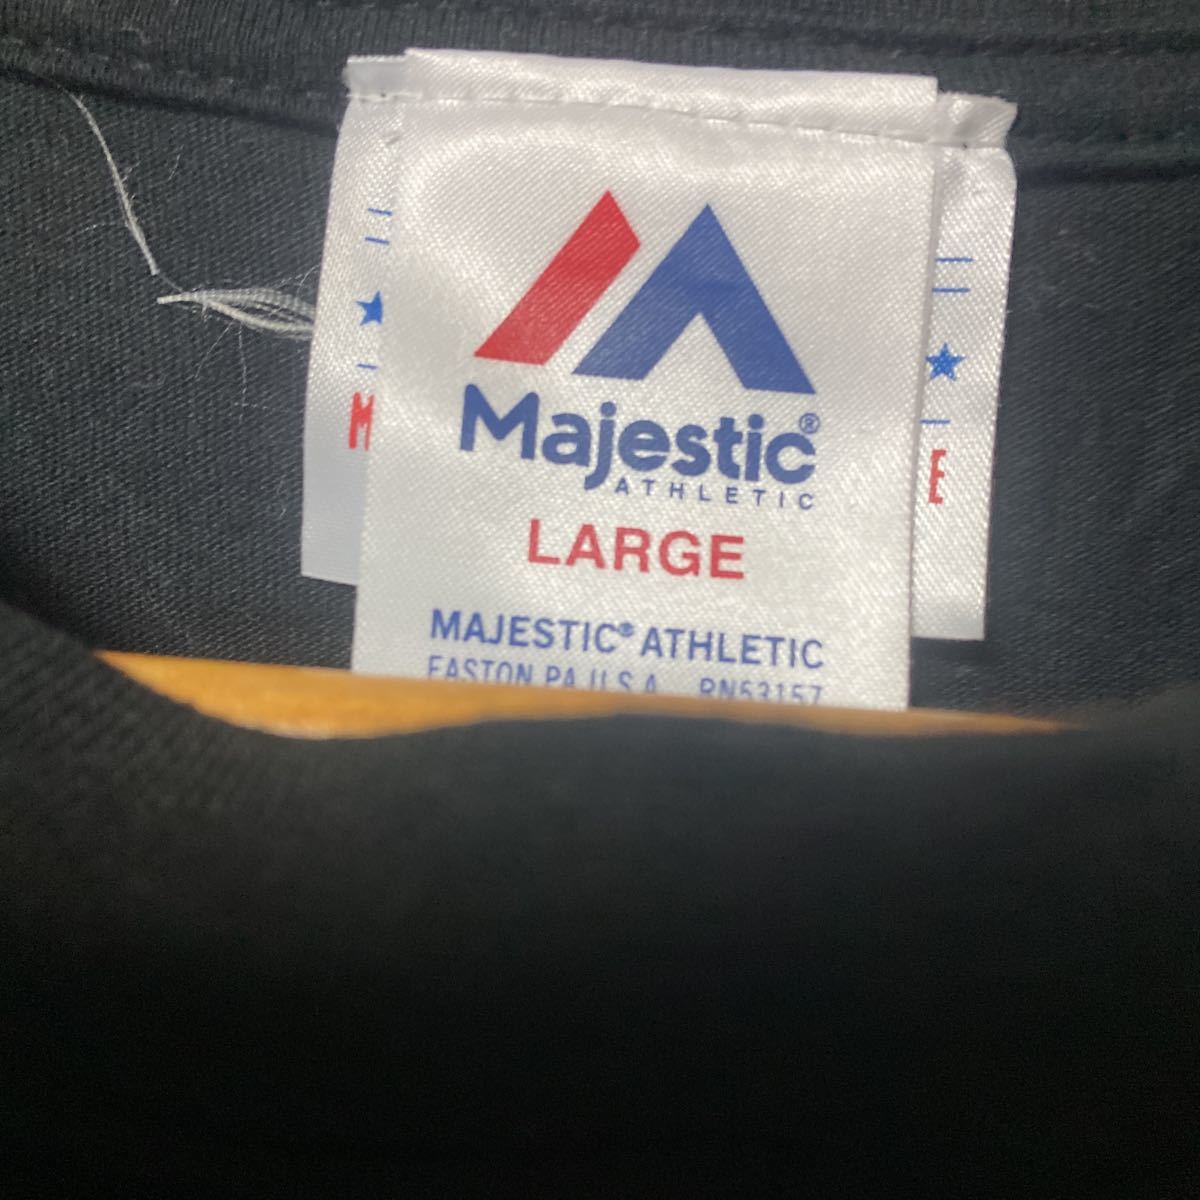 Majestic マジェスティック ヤンキースラバープリントTシャツ LIサイズの画像2